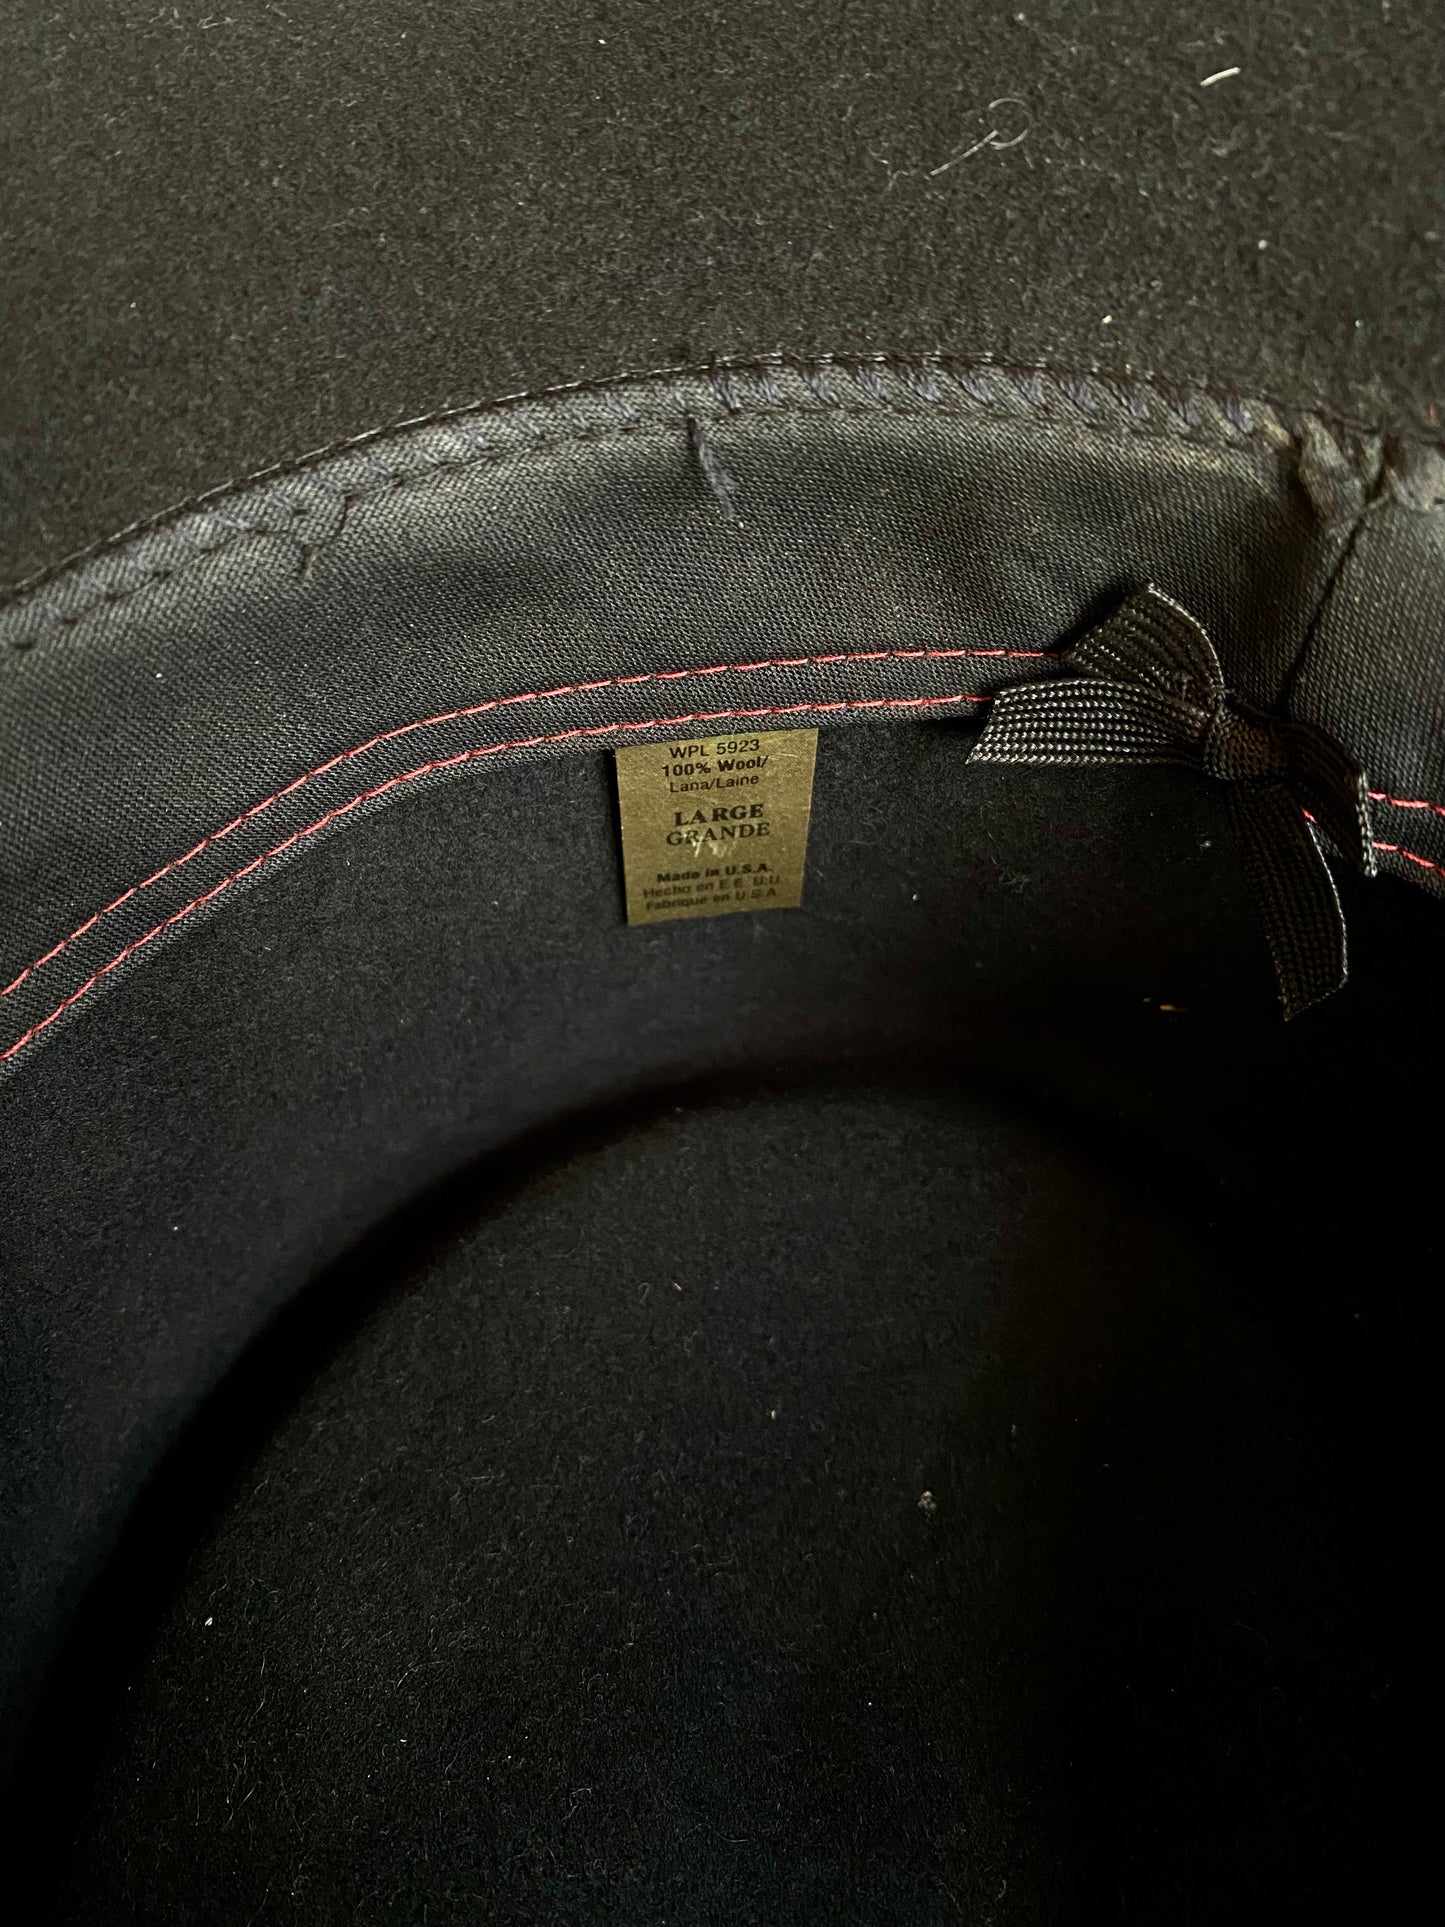 Vintage Black Felt Cowboy Hat w/ Leather Braided Hat Band